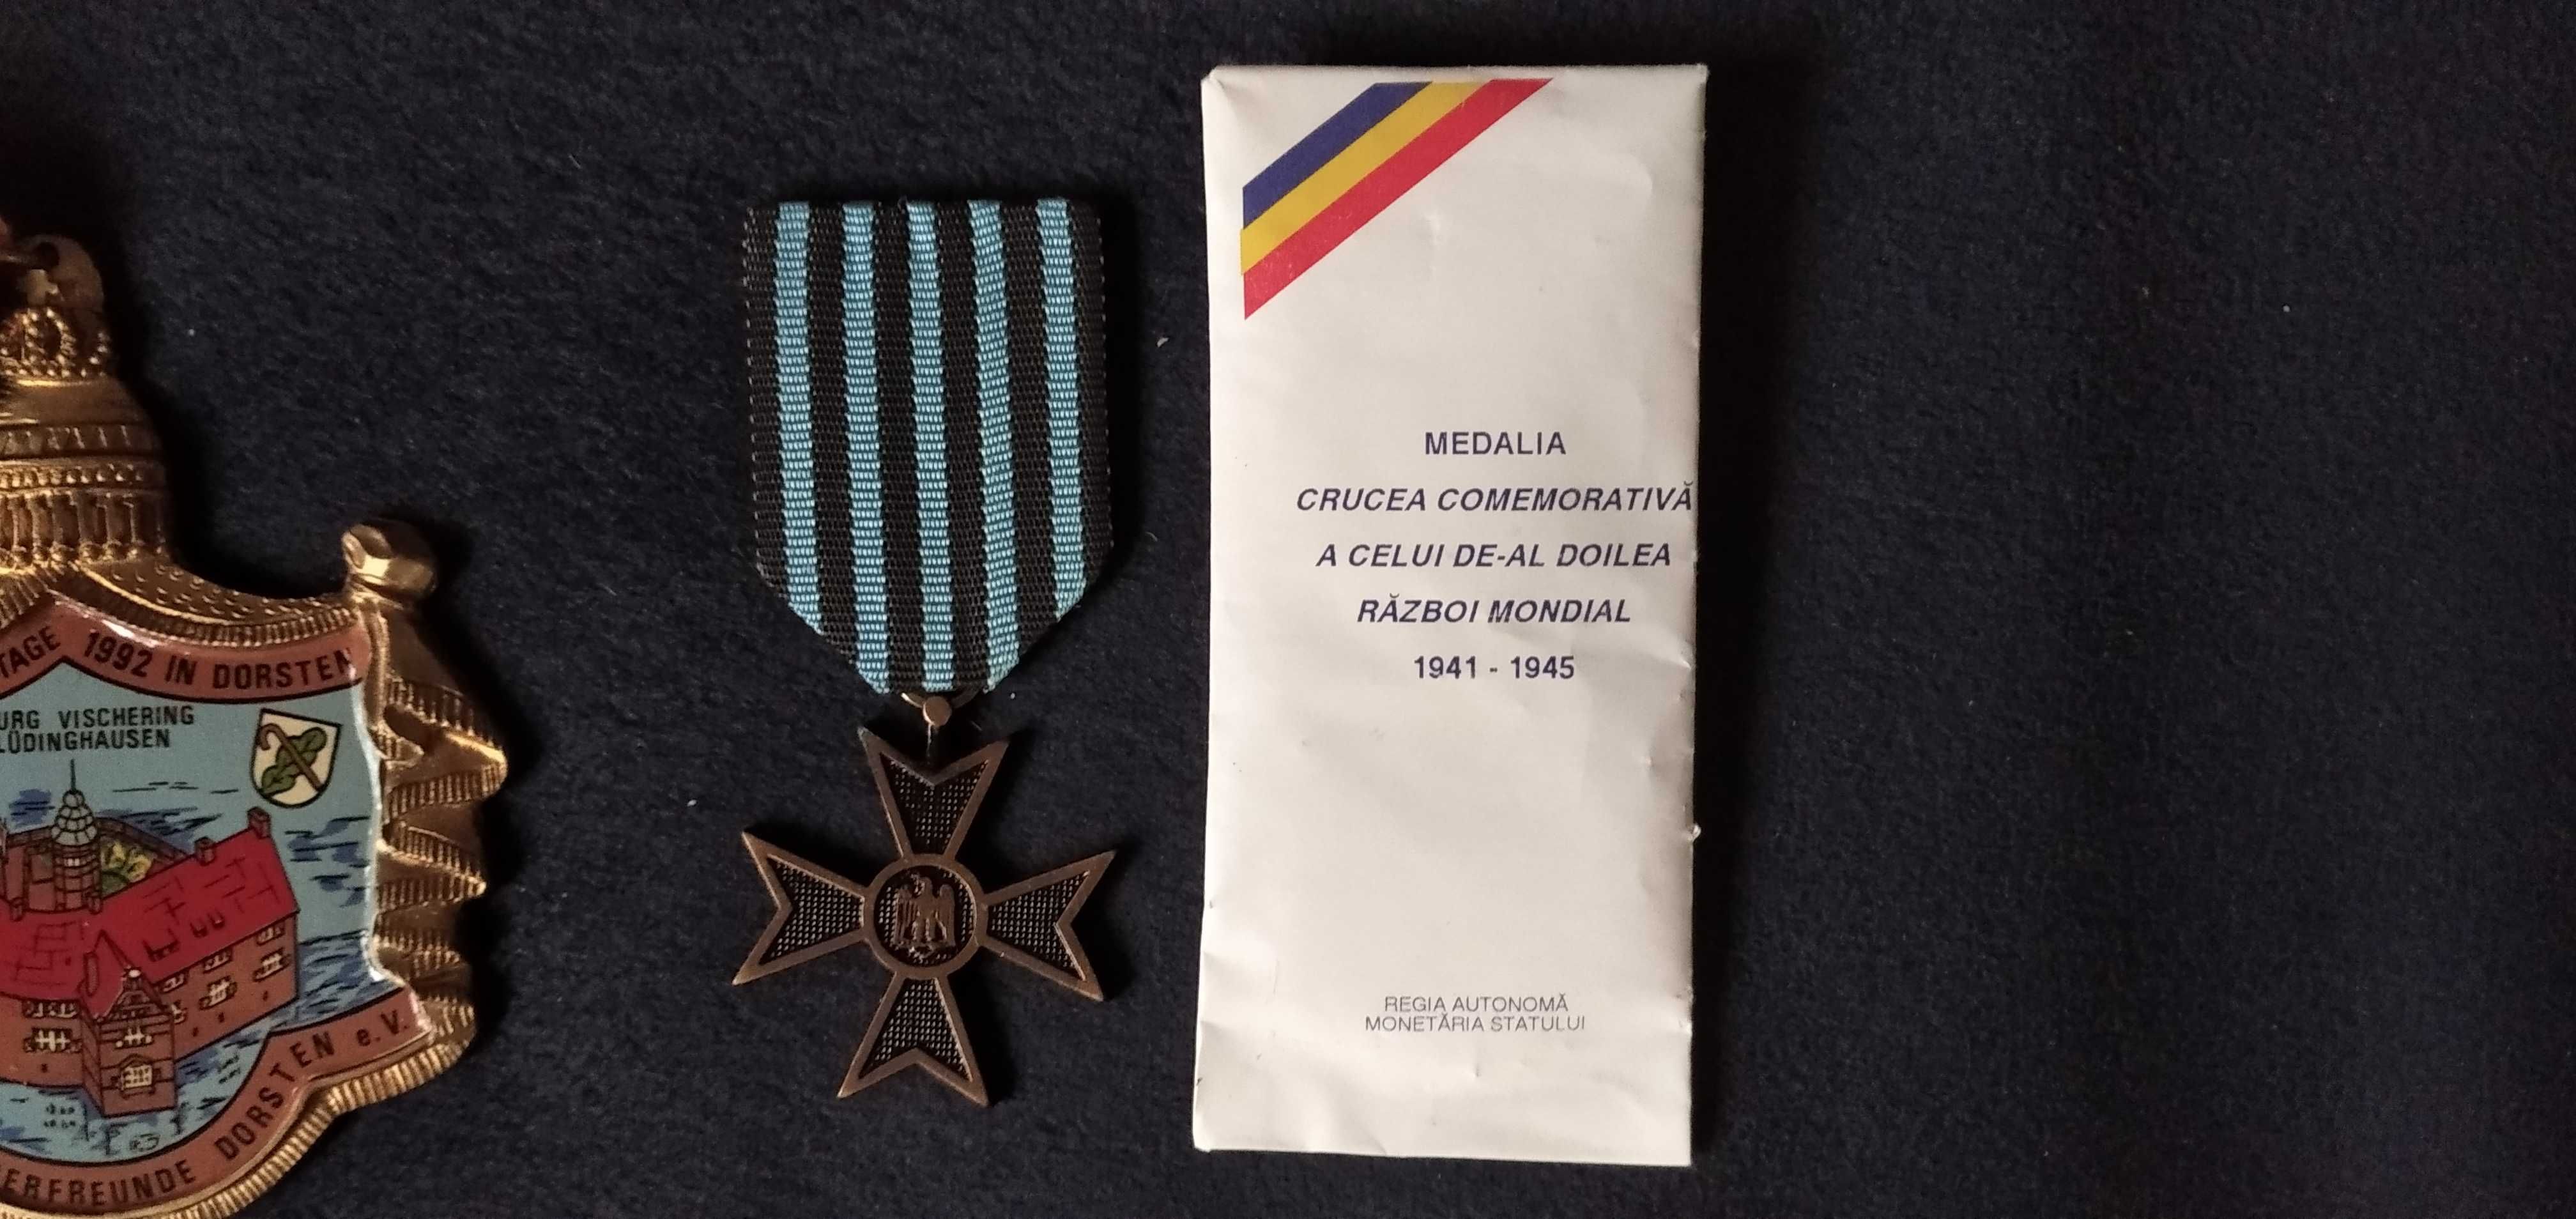 Vând un set de medalii și insigne românești și străine.